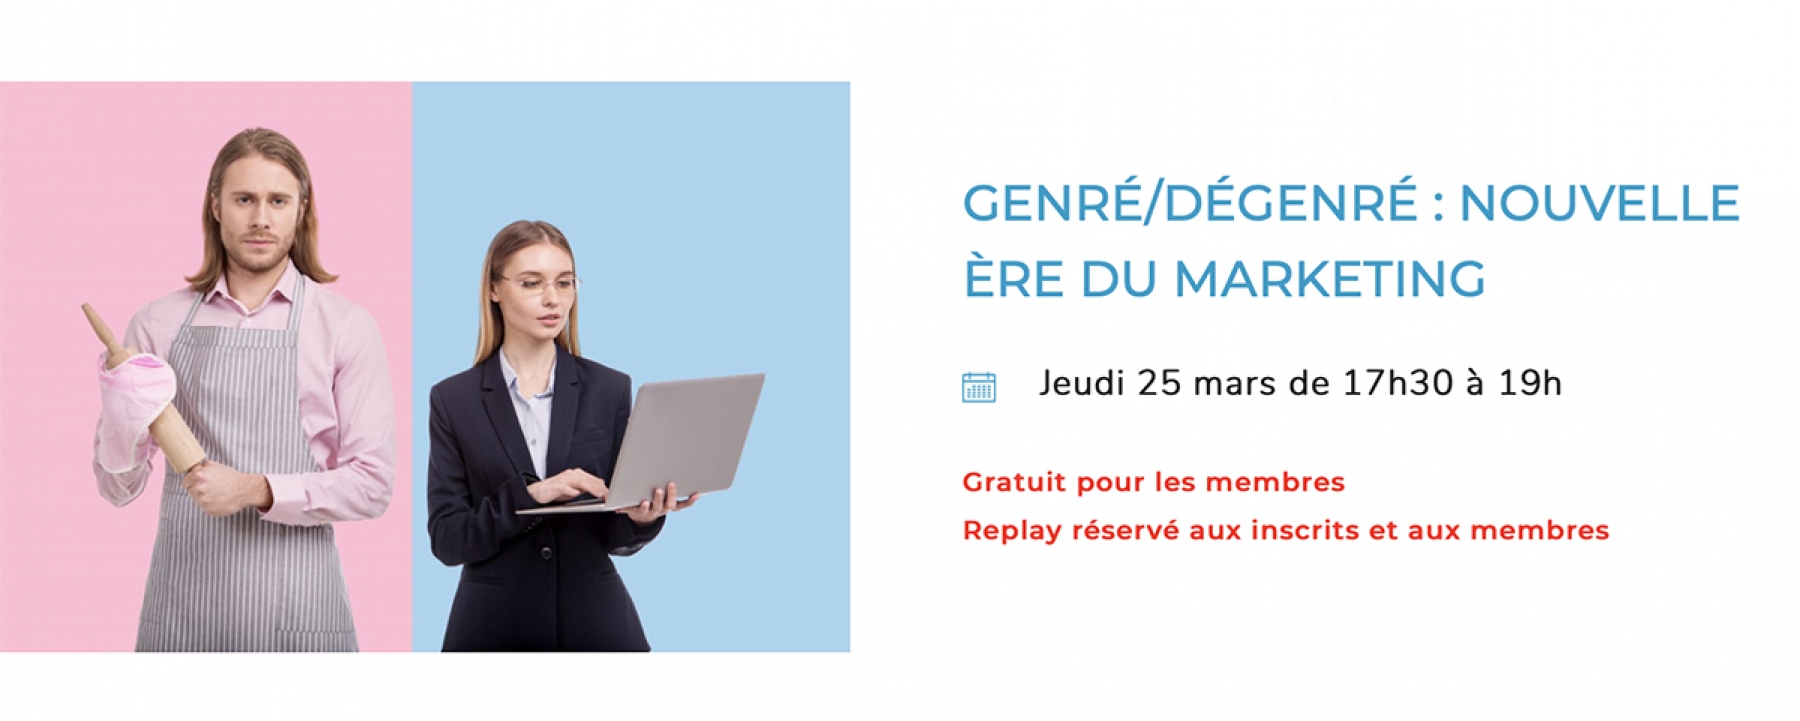 Genré/dégenré : nouvelle ère du marketing, organisé en ligne par l'Adetem le 25 mars 